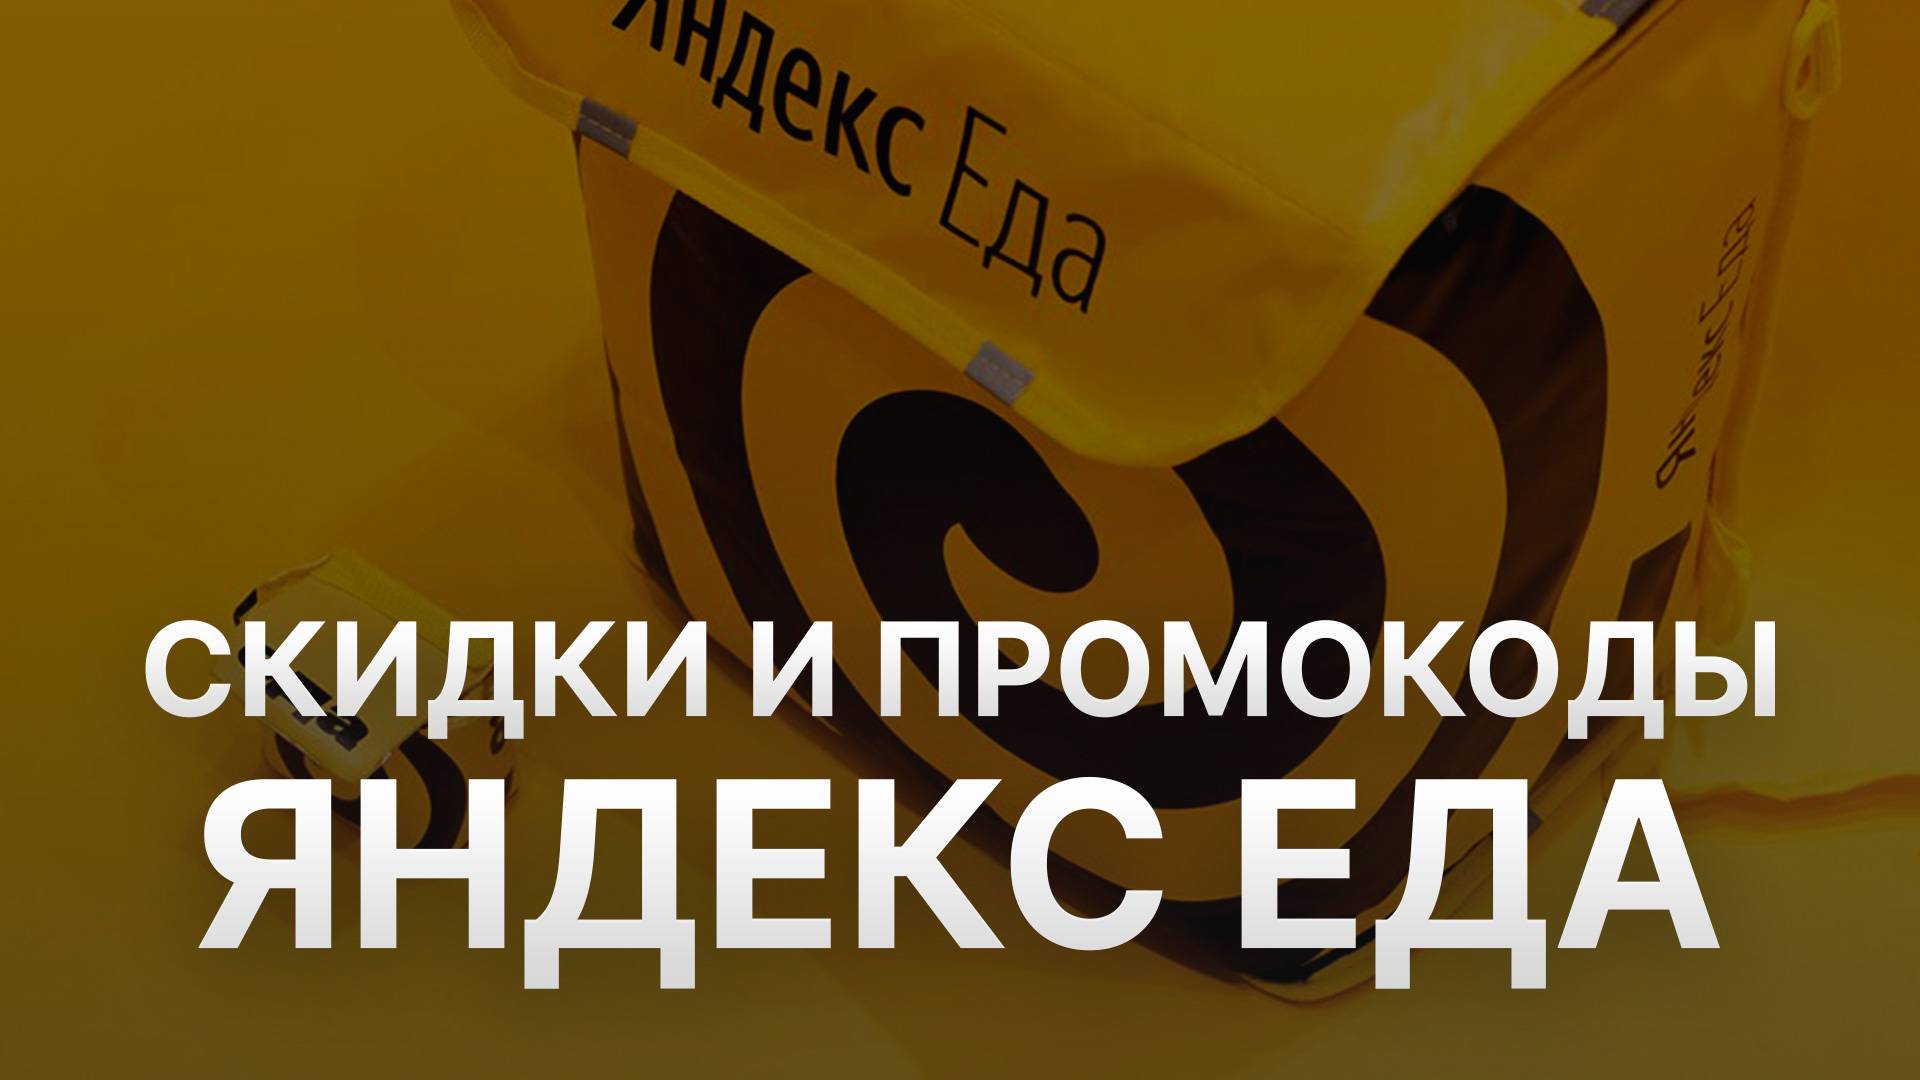 ⚠️ Промокод Яндекс Еда Скидки и Купонах Yandex Eda 350 руб - Как получить промокод Яндекс Еда?